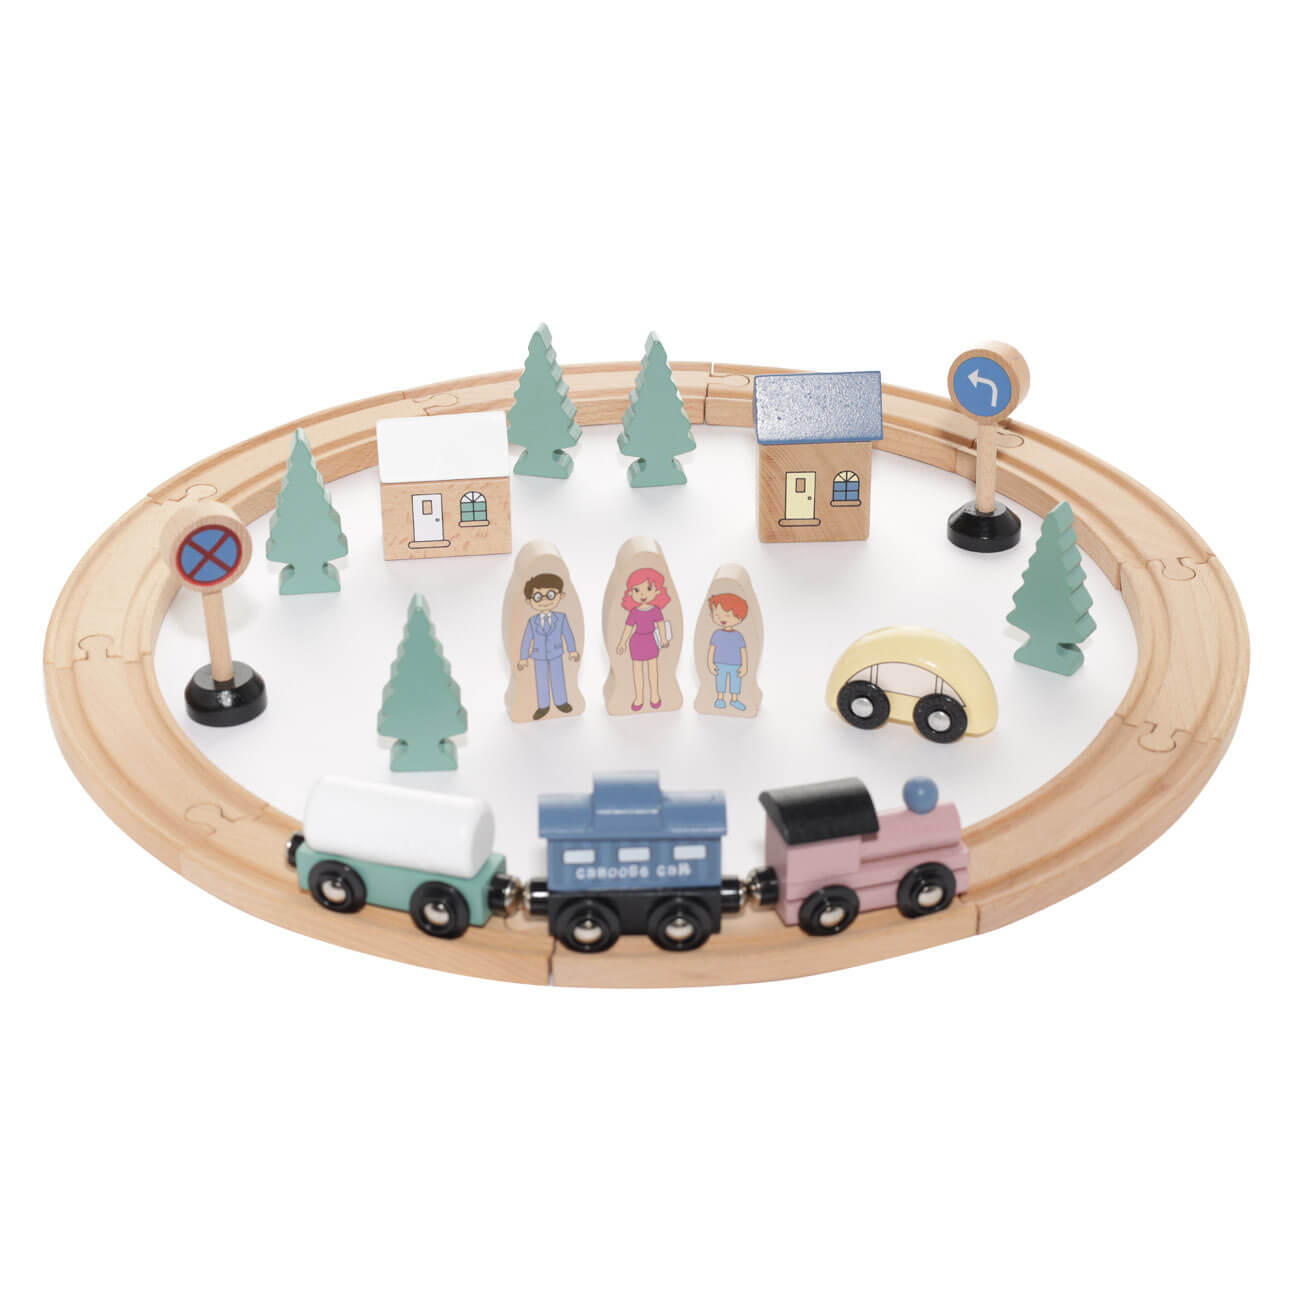 Железная дорога игрушечная, 28 см, дерево, Город, Game железная дорога классический грузовой поезд с дымовыми эффектами протяжённость пути 2 72 м